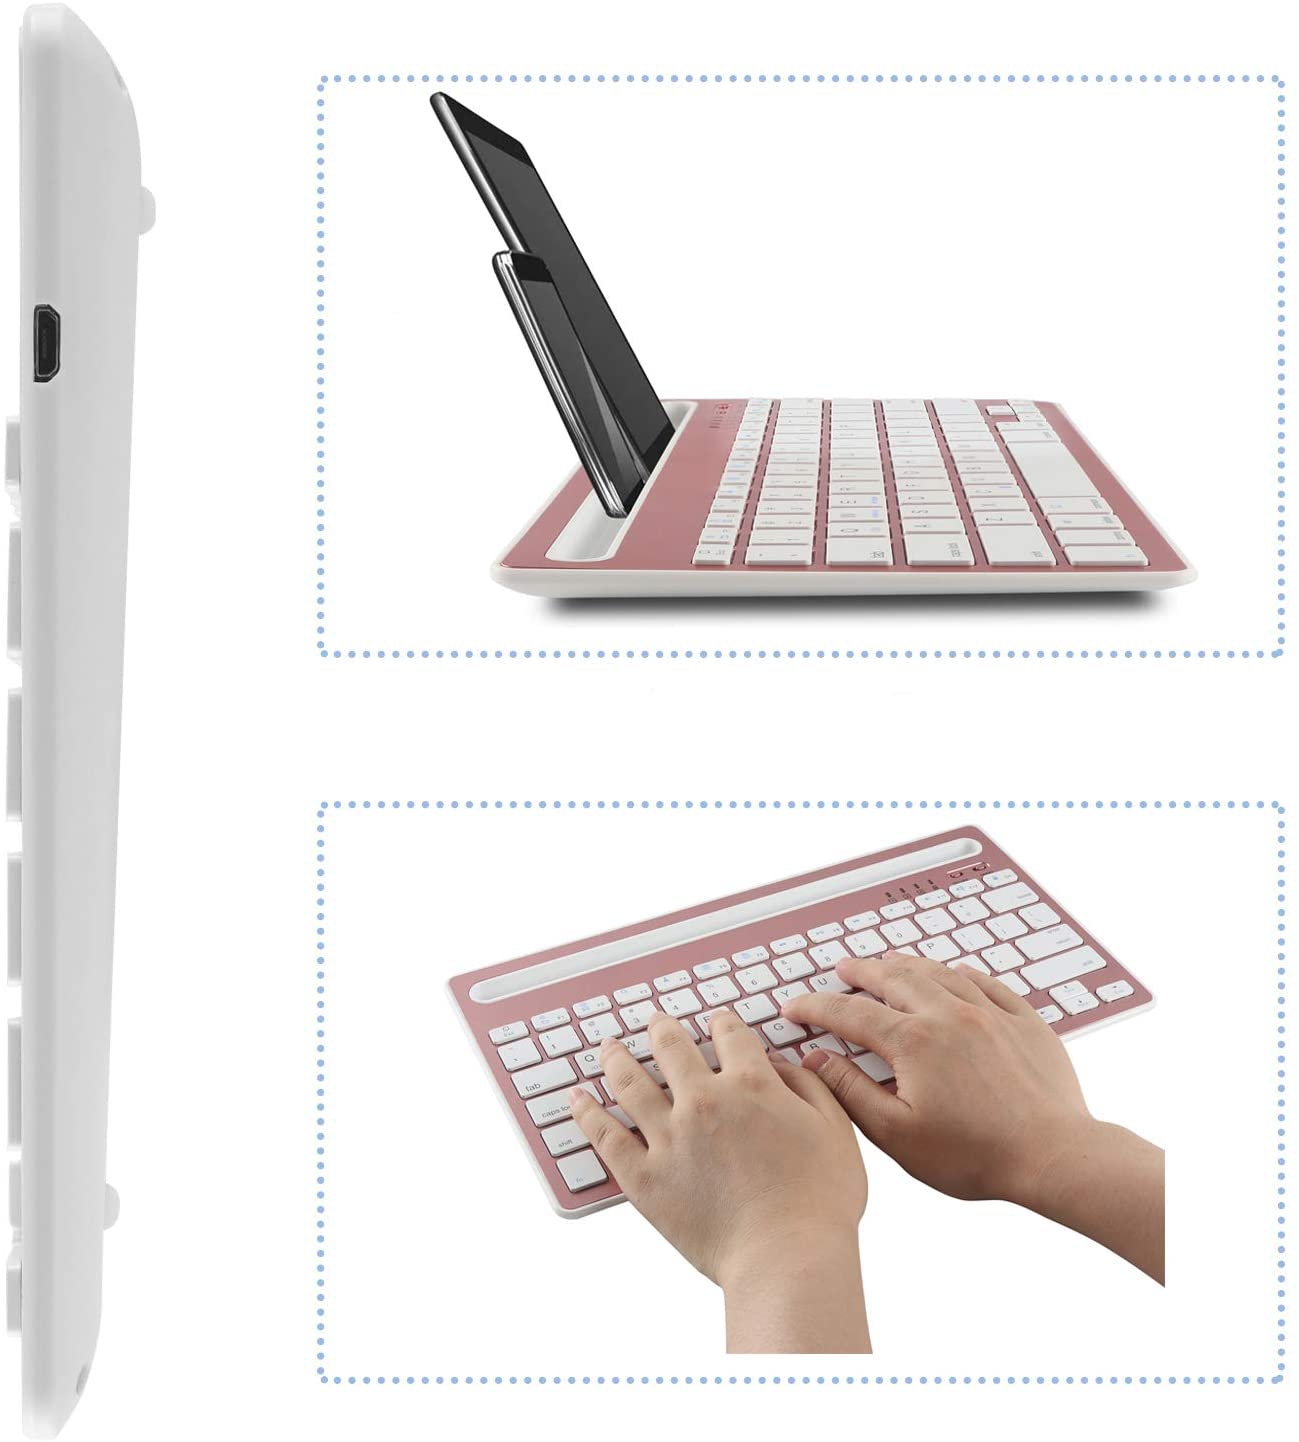 COOLAY(クーレイ) マルチペアリング Bluetoothキーボードの商品画像サムネ5 